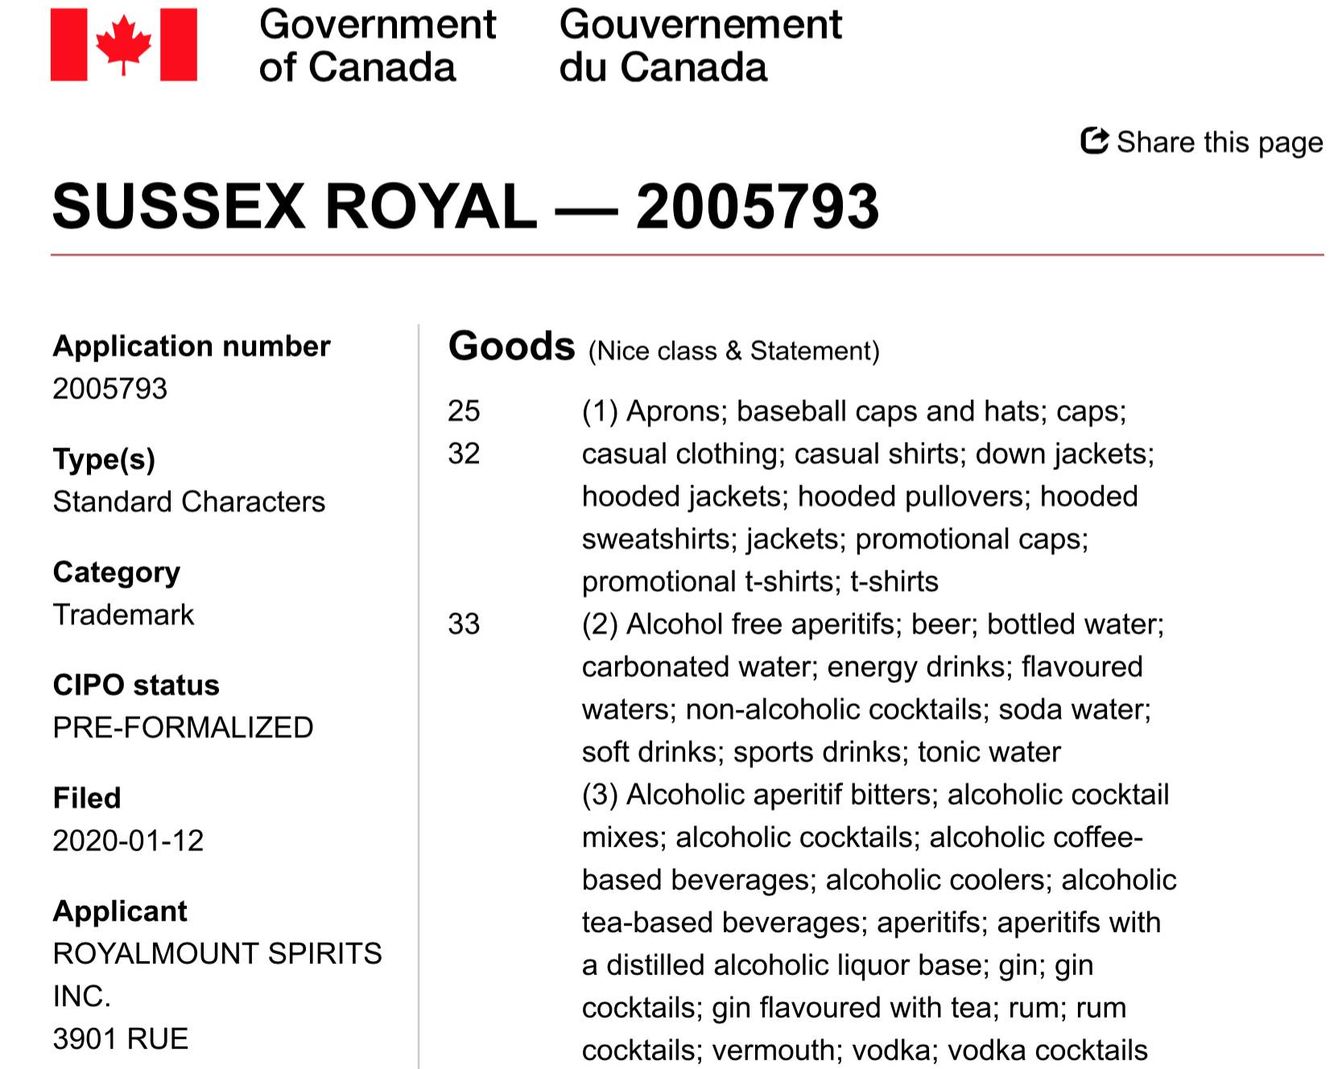 Solicitud de registro de la marca 'Sussex Royal' en Canadá.